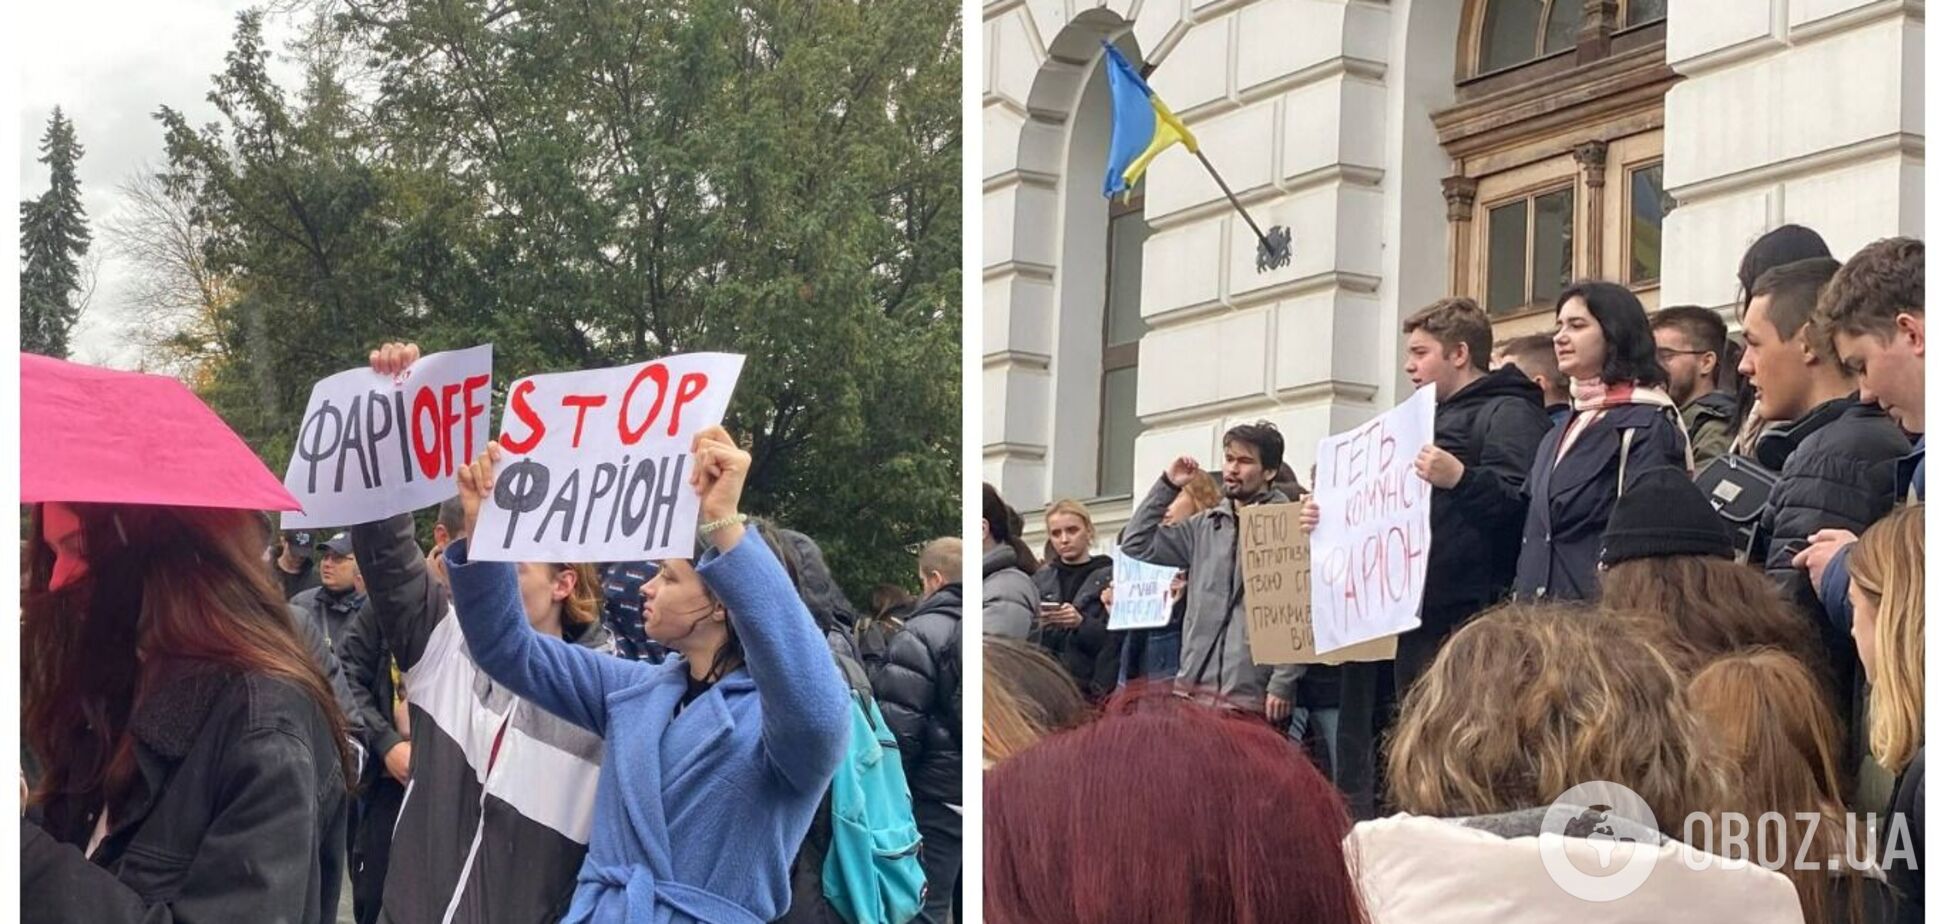 'Ганьбить Україну': у Львові студенти вийшли на мітинг з вимогою звільнення Фаріон. Що відомо про скандали з її участю